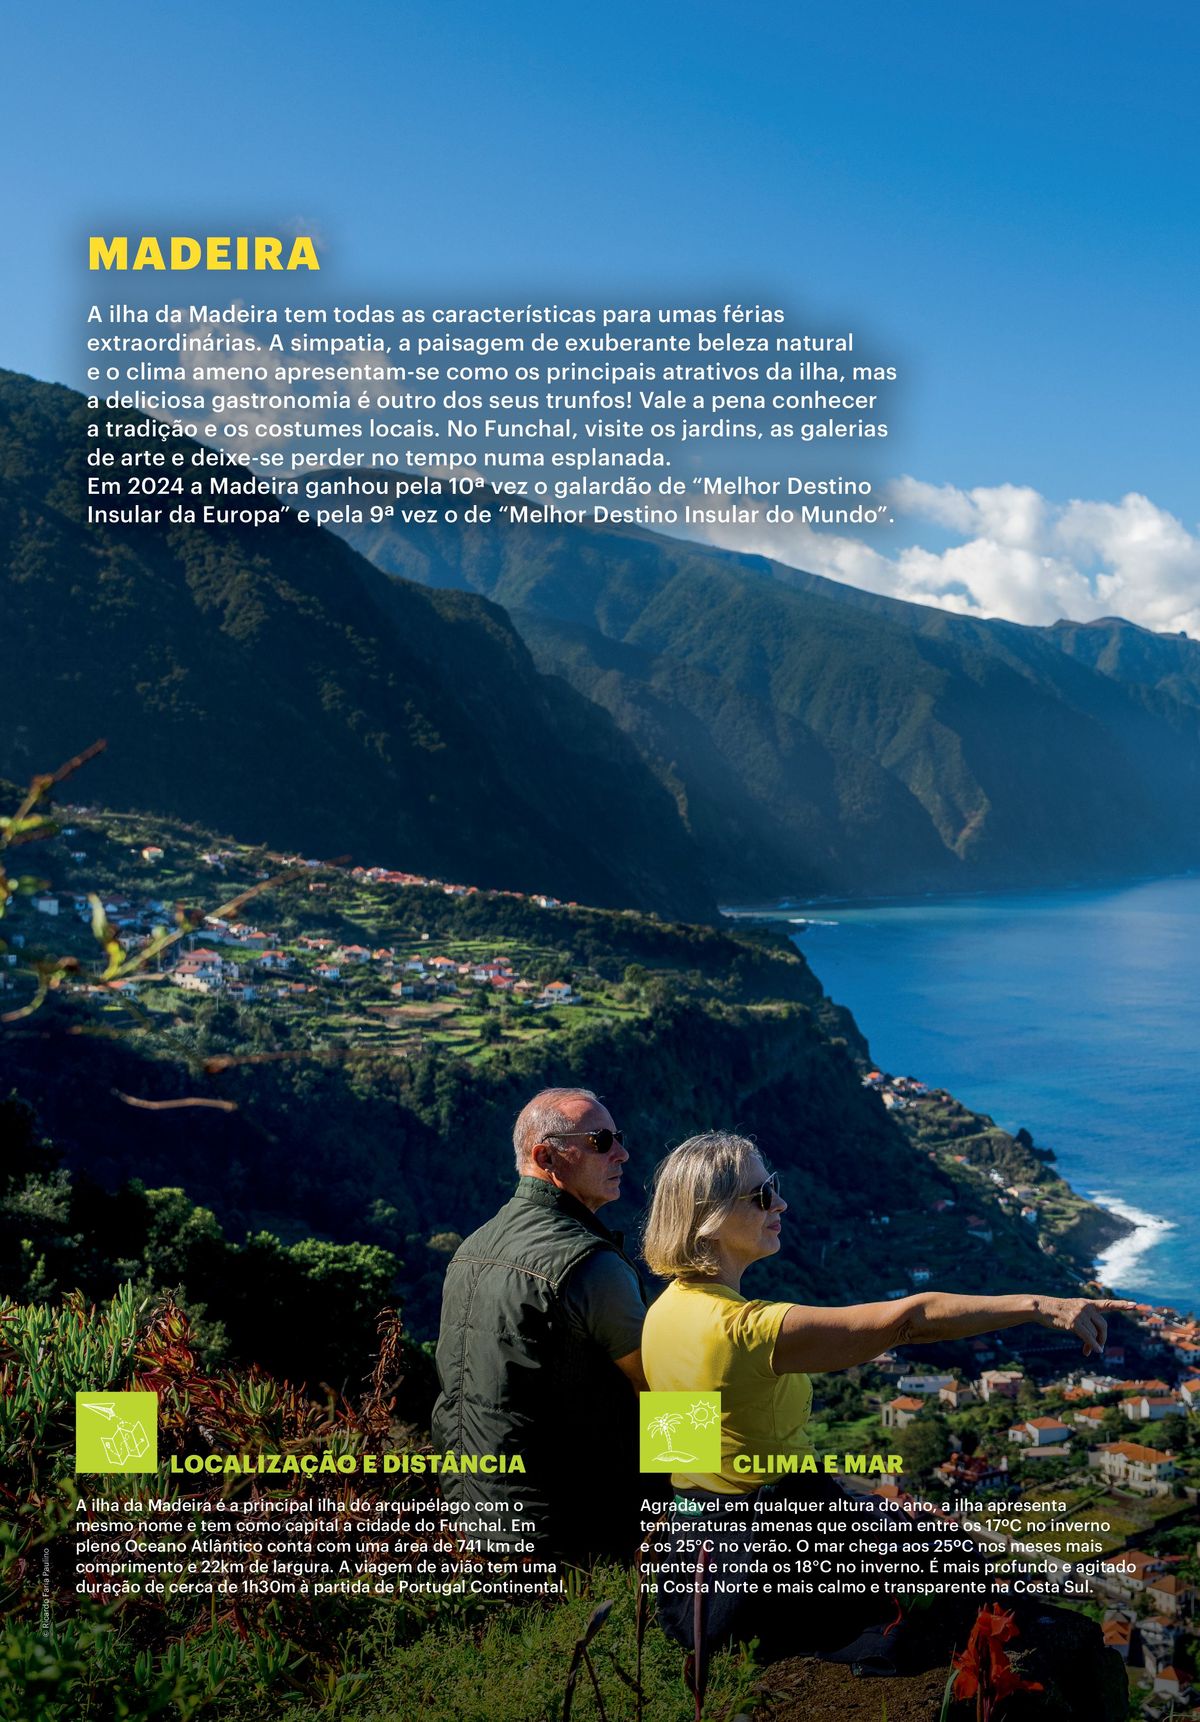 Promoção na Ilha da Madeira: Conheça os principais atrativos com desconto!